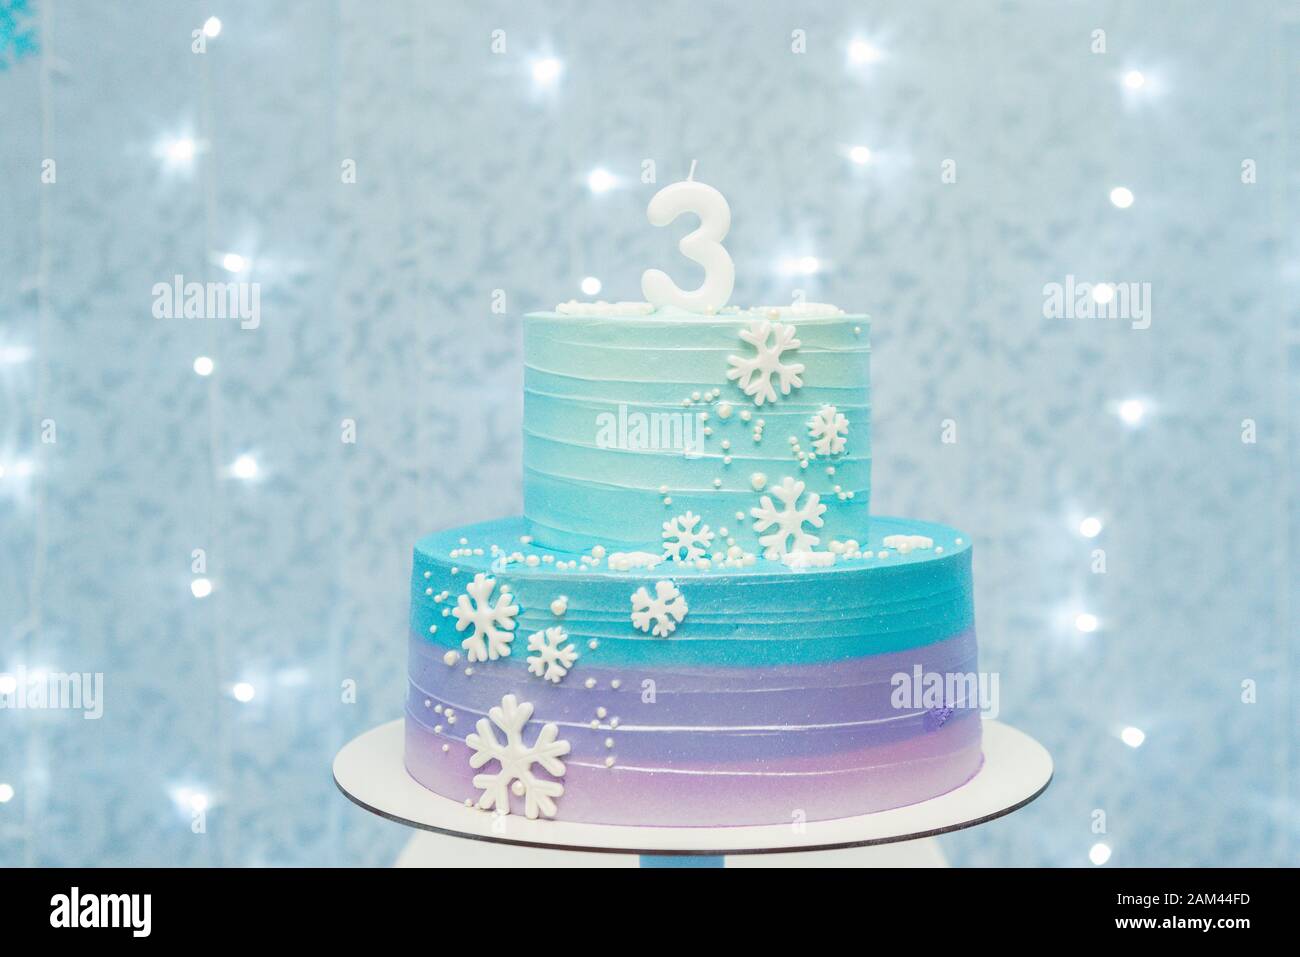 Kuchen zeigen Details von wunderbarem blauem und violettem Geburtstagskuchen, der mit Schneeflocken dekoriert ist. Zweistufiger Kuchen auf blauem Hintergrund mit unfokussierten Lichtern. Stockfoto